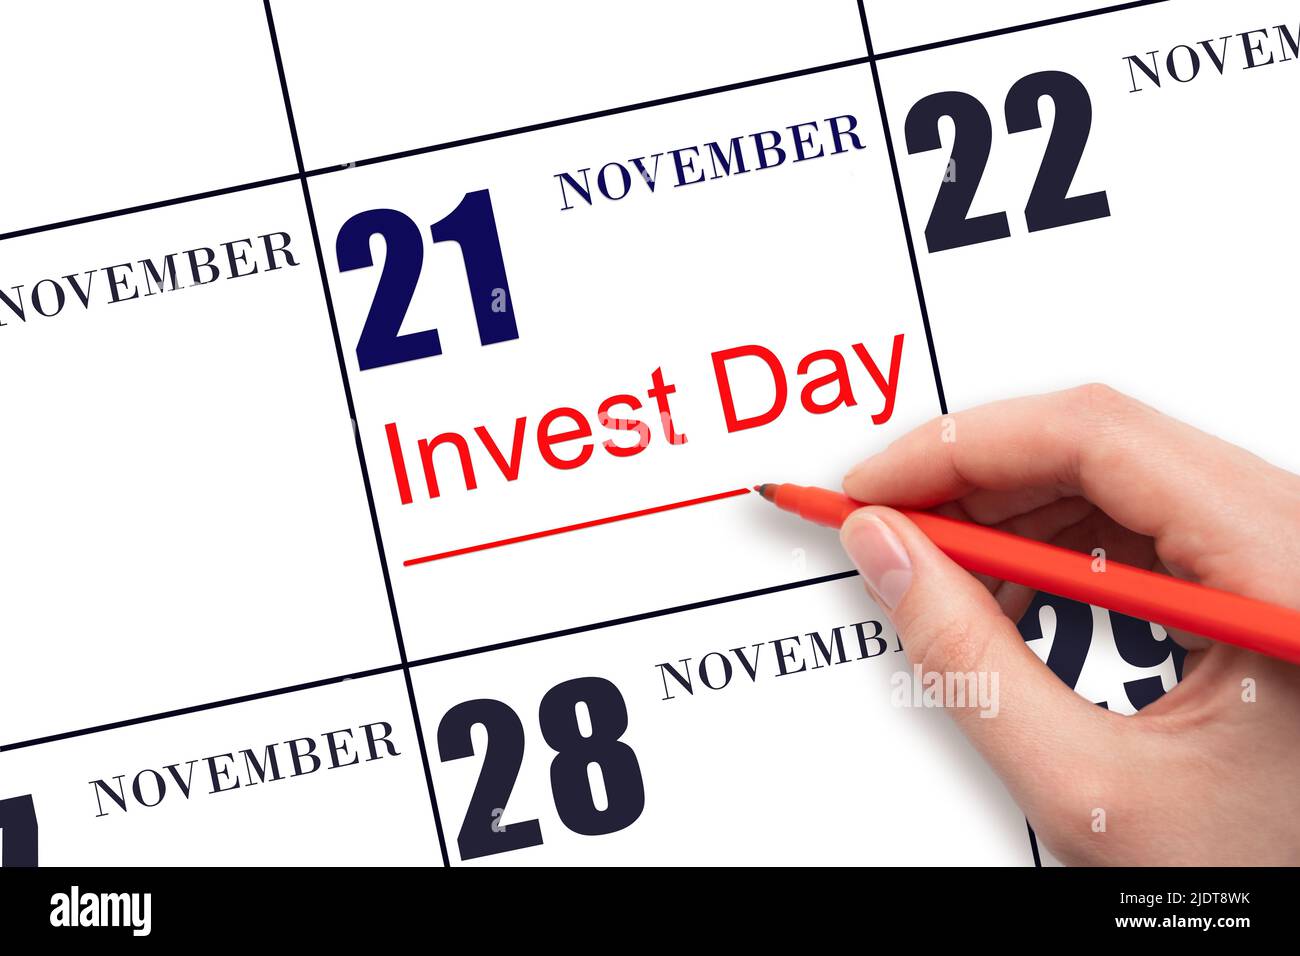 21st novembre. Disegno a mano linea rossa e scrittura del testo Invest Day in data calendario 21 novembre. Concetto commerciale e finanziario. Mese autunnale Foto Stock